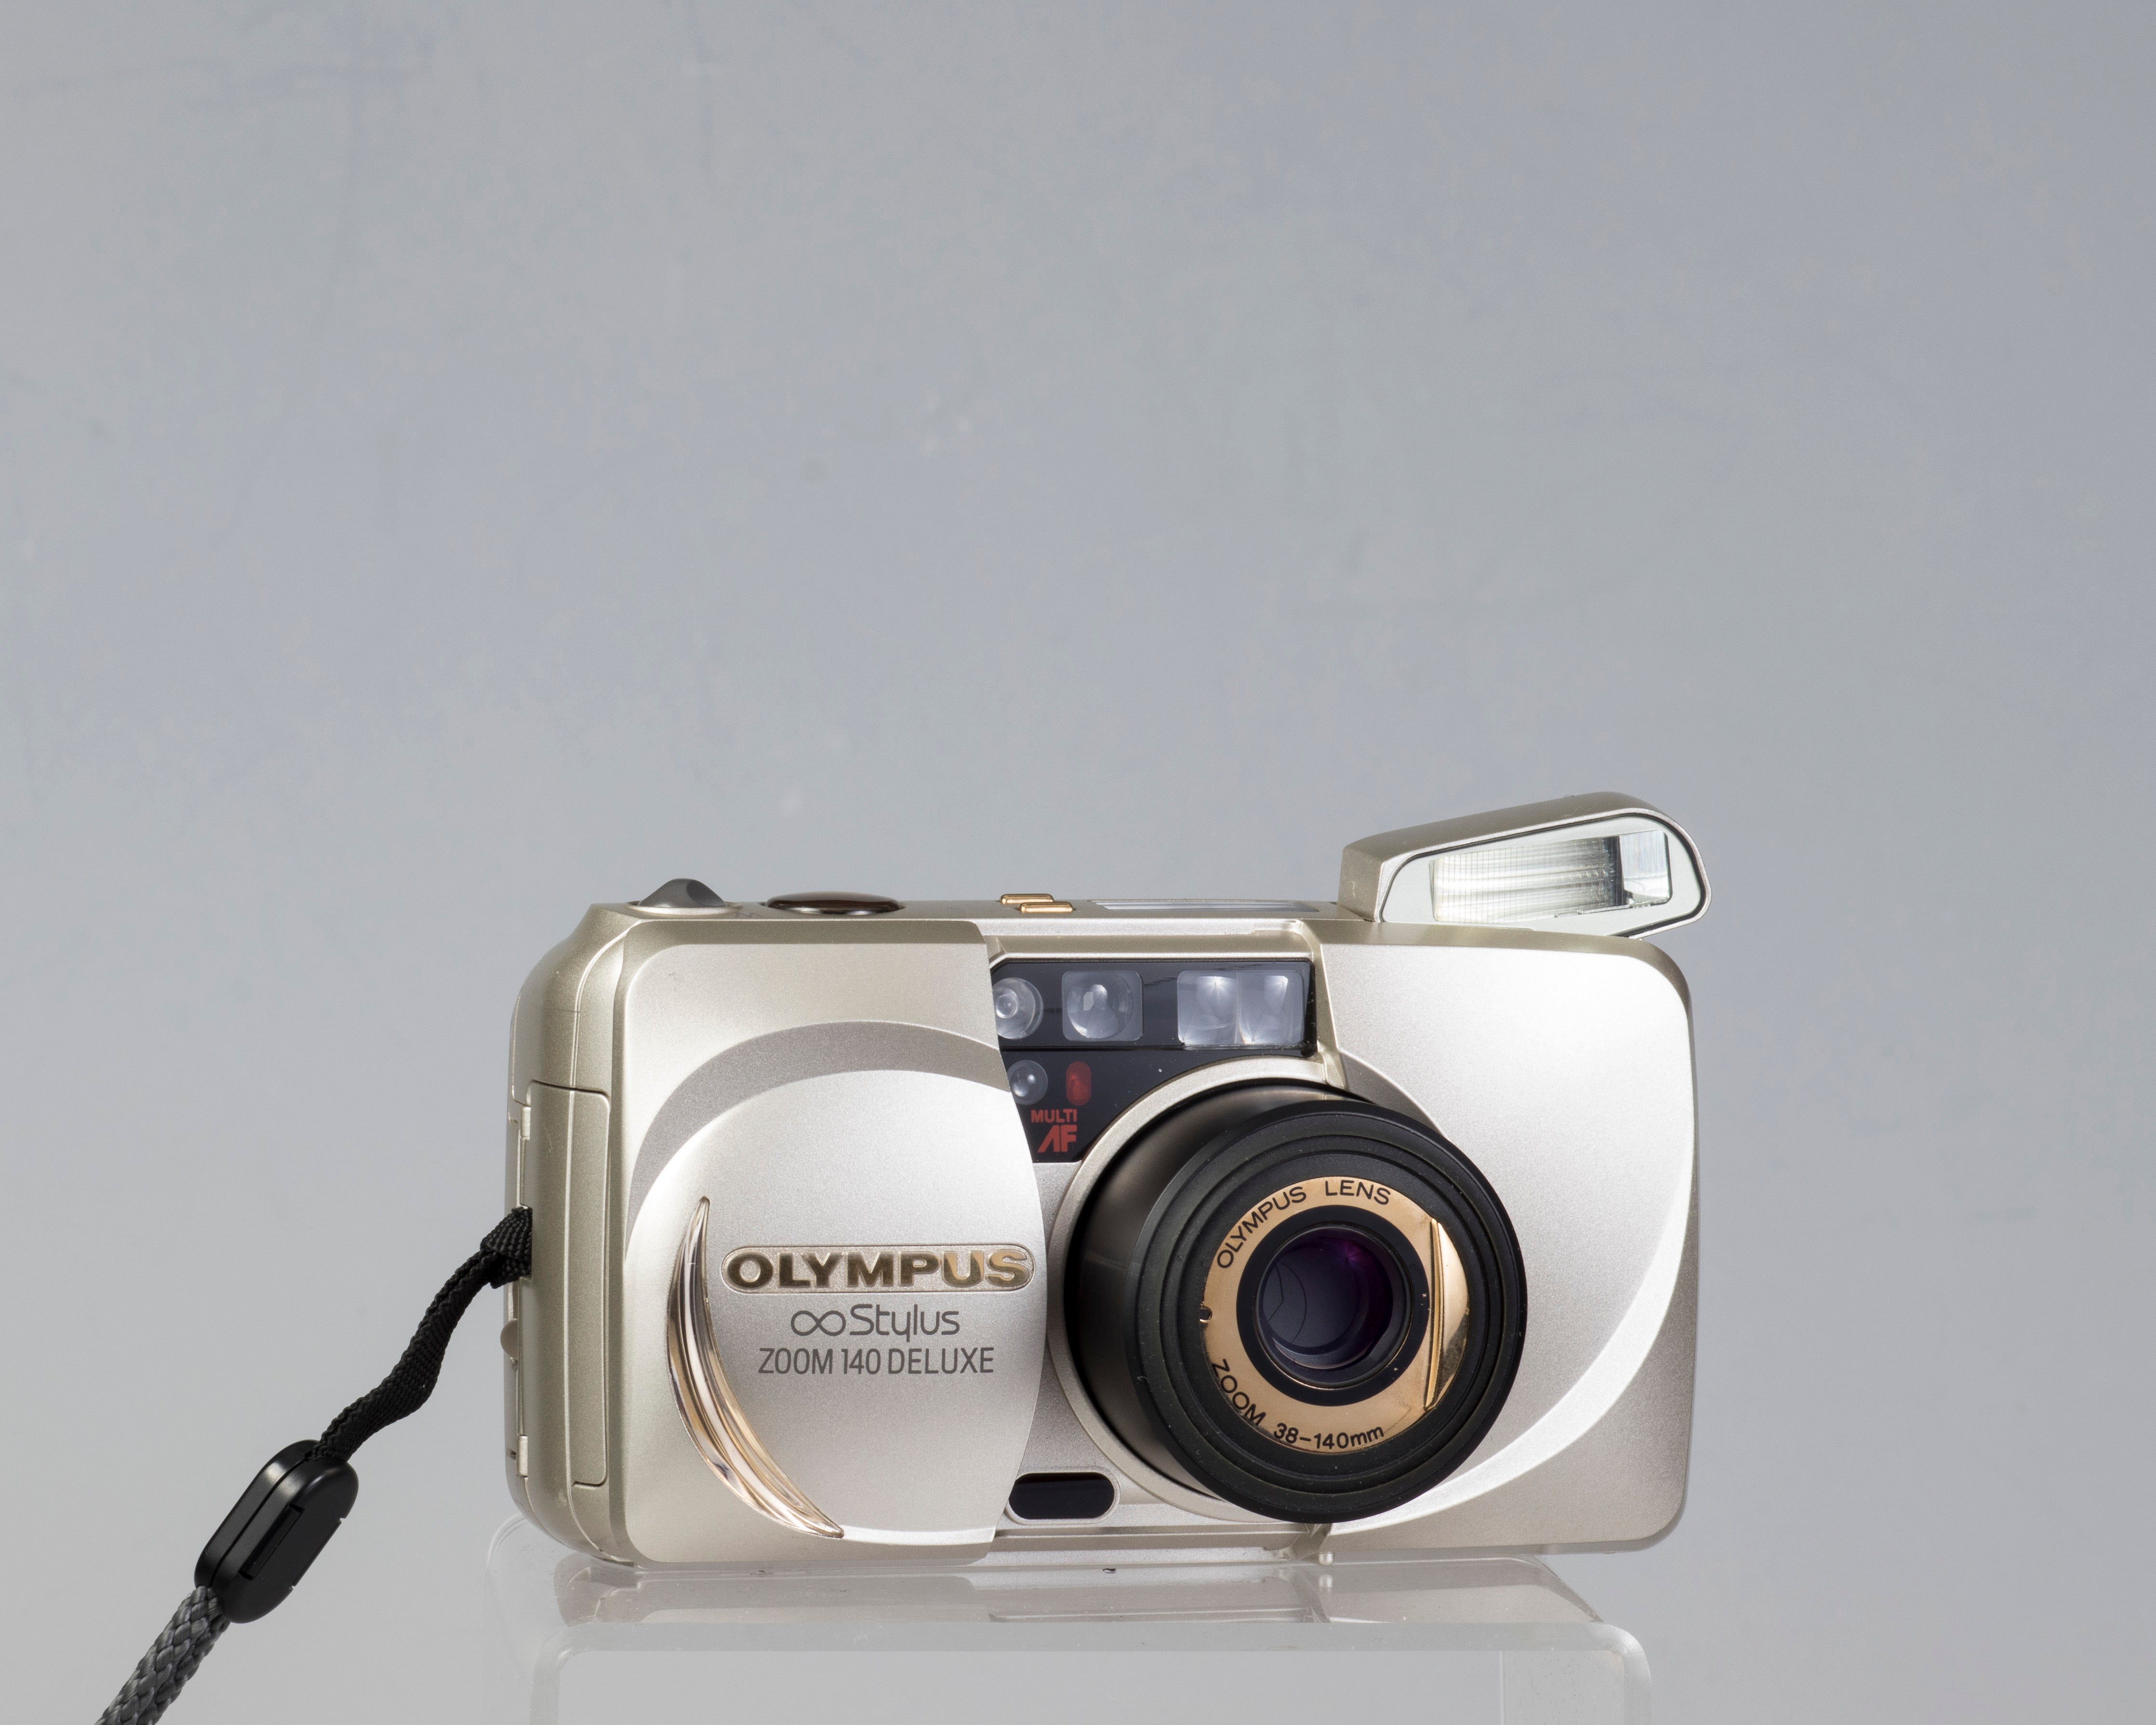 Olympus ∞ Stylus Zoom 140 Deluxe 35mm film camera (serial